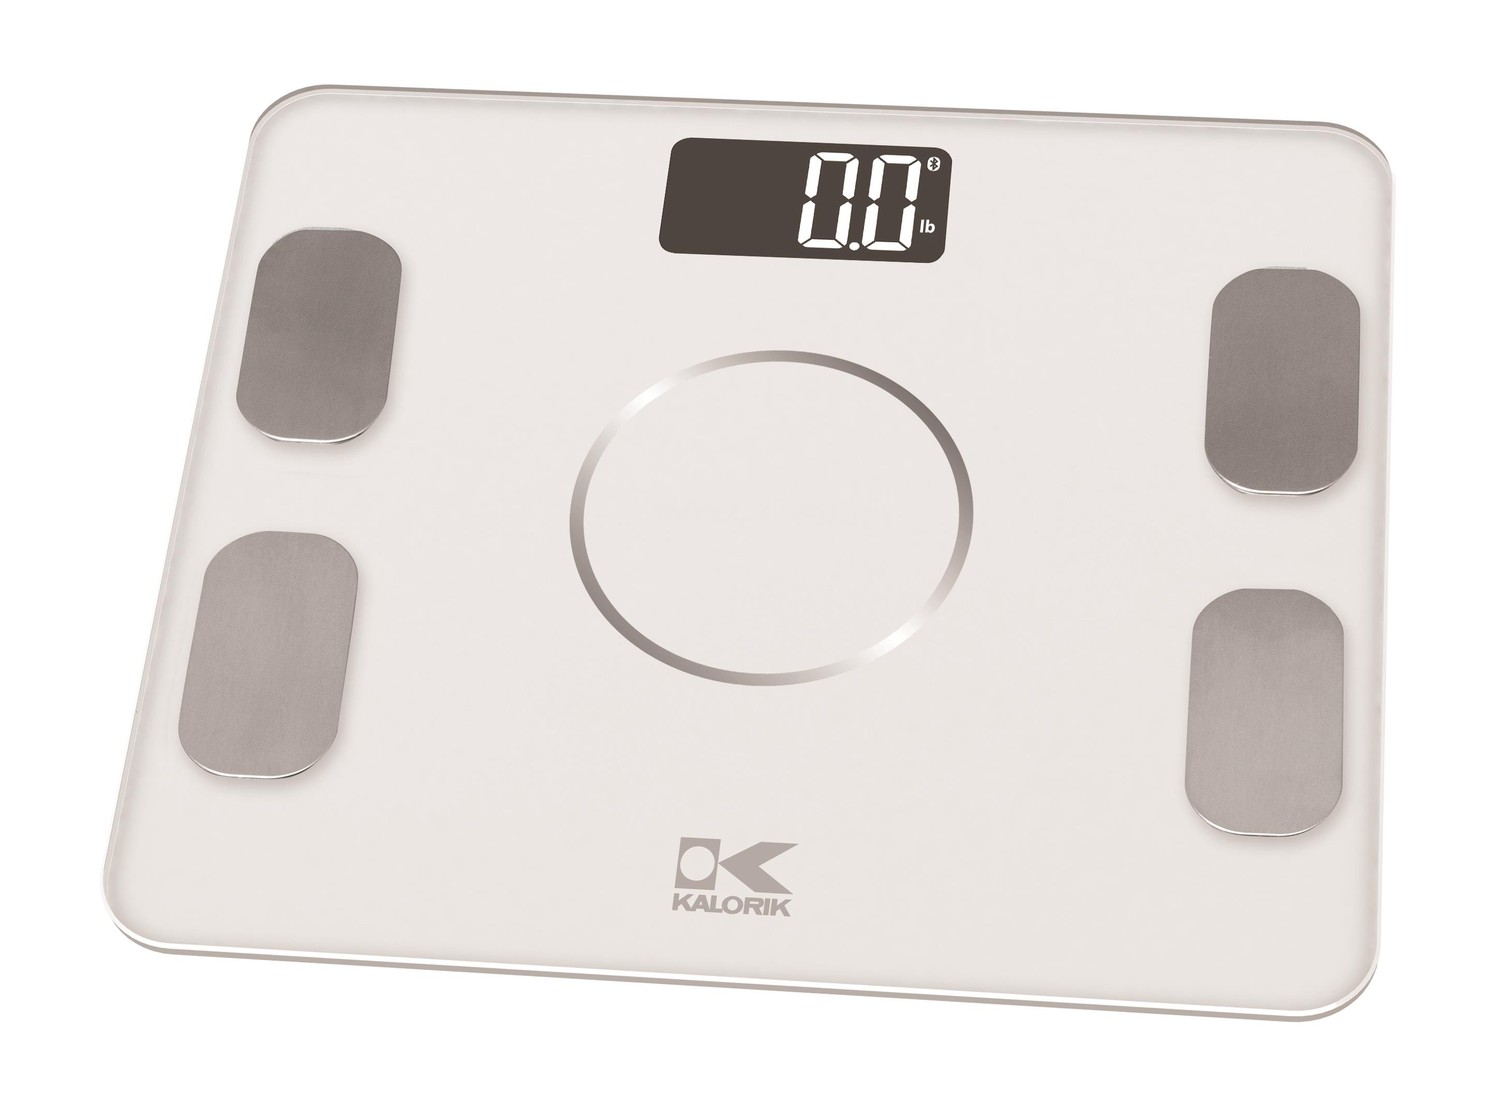 Kalorik Bluetooth White Electronic Body Fat Scale with body analysis